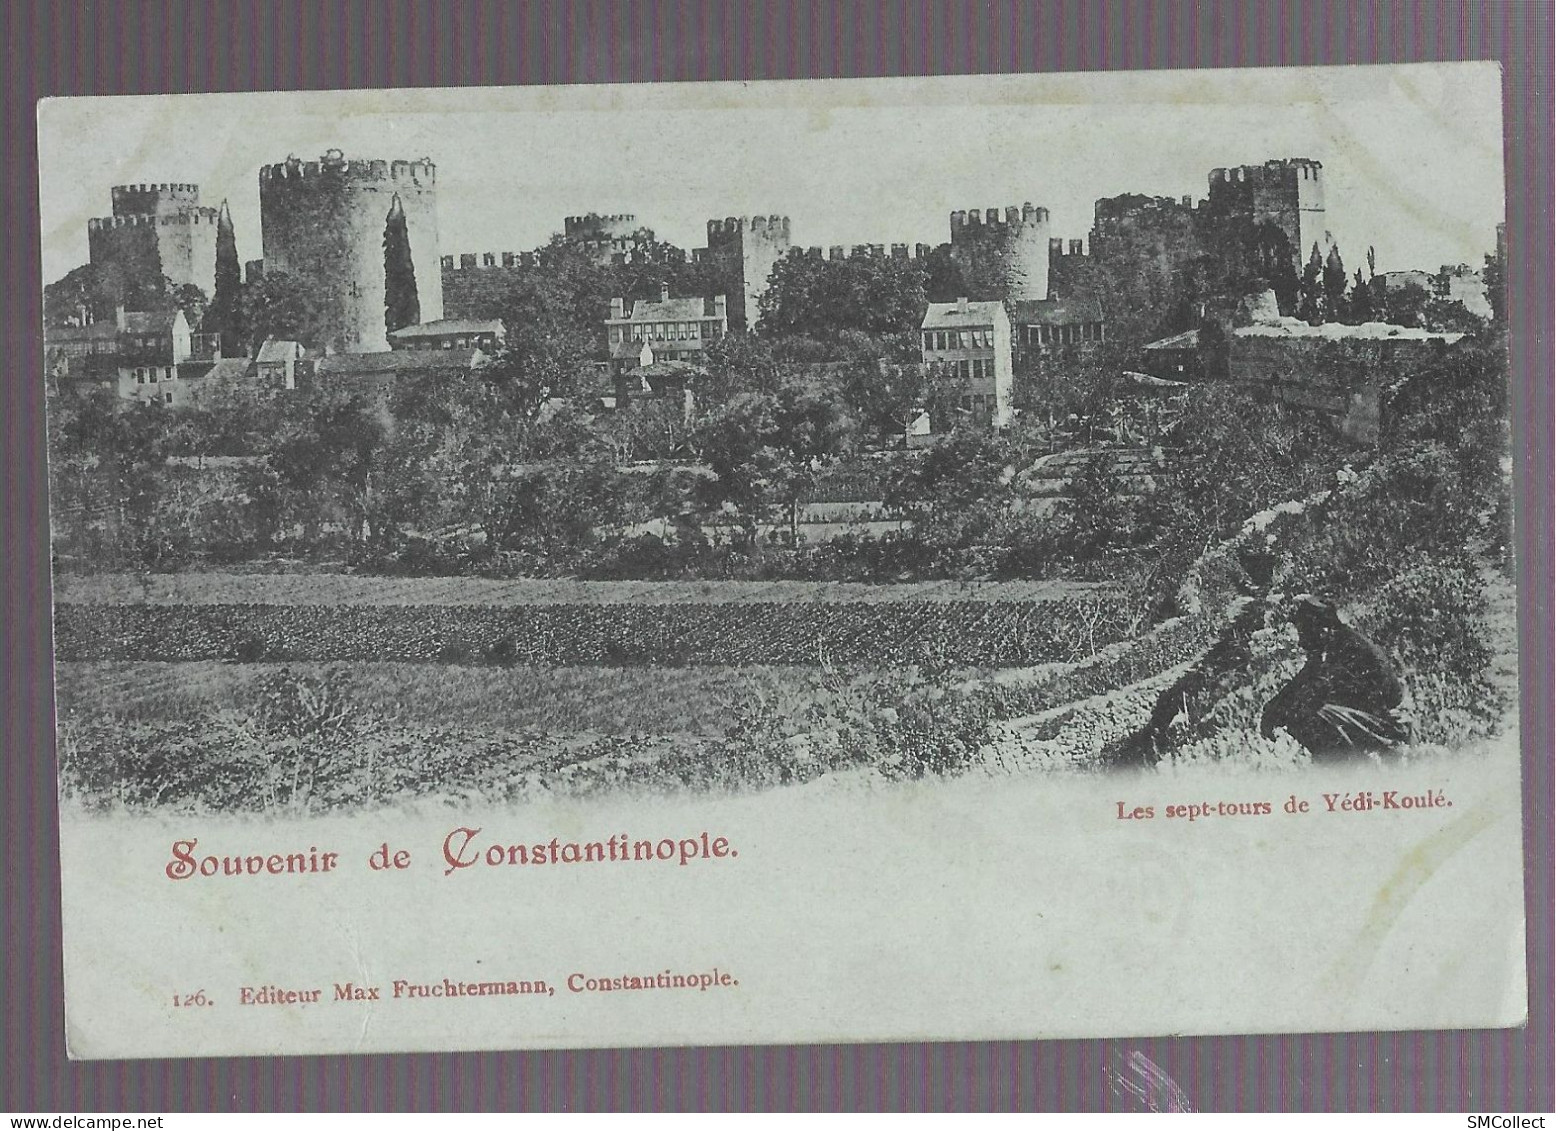 VOIR DESCRIPTION. Souvenir De Constantinople, Les Sept Tours De Yédi-Koulé (9921) - Turquie